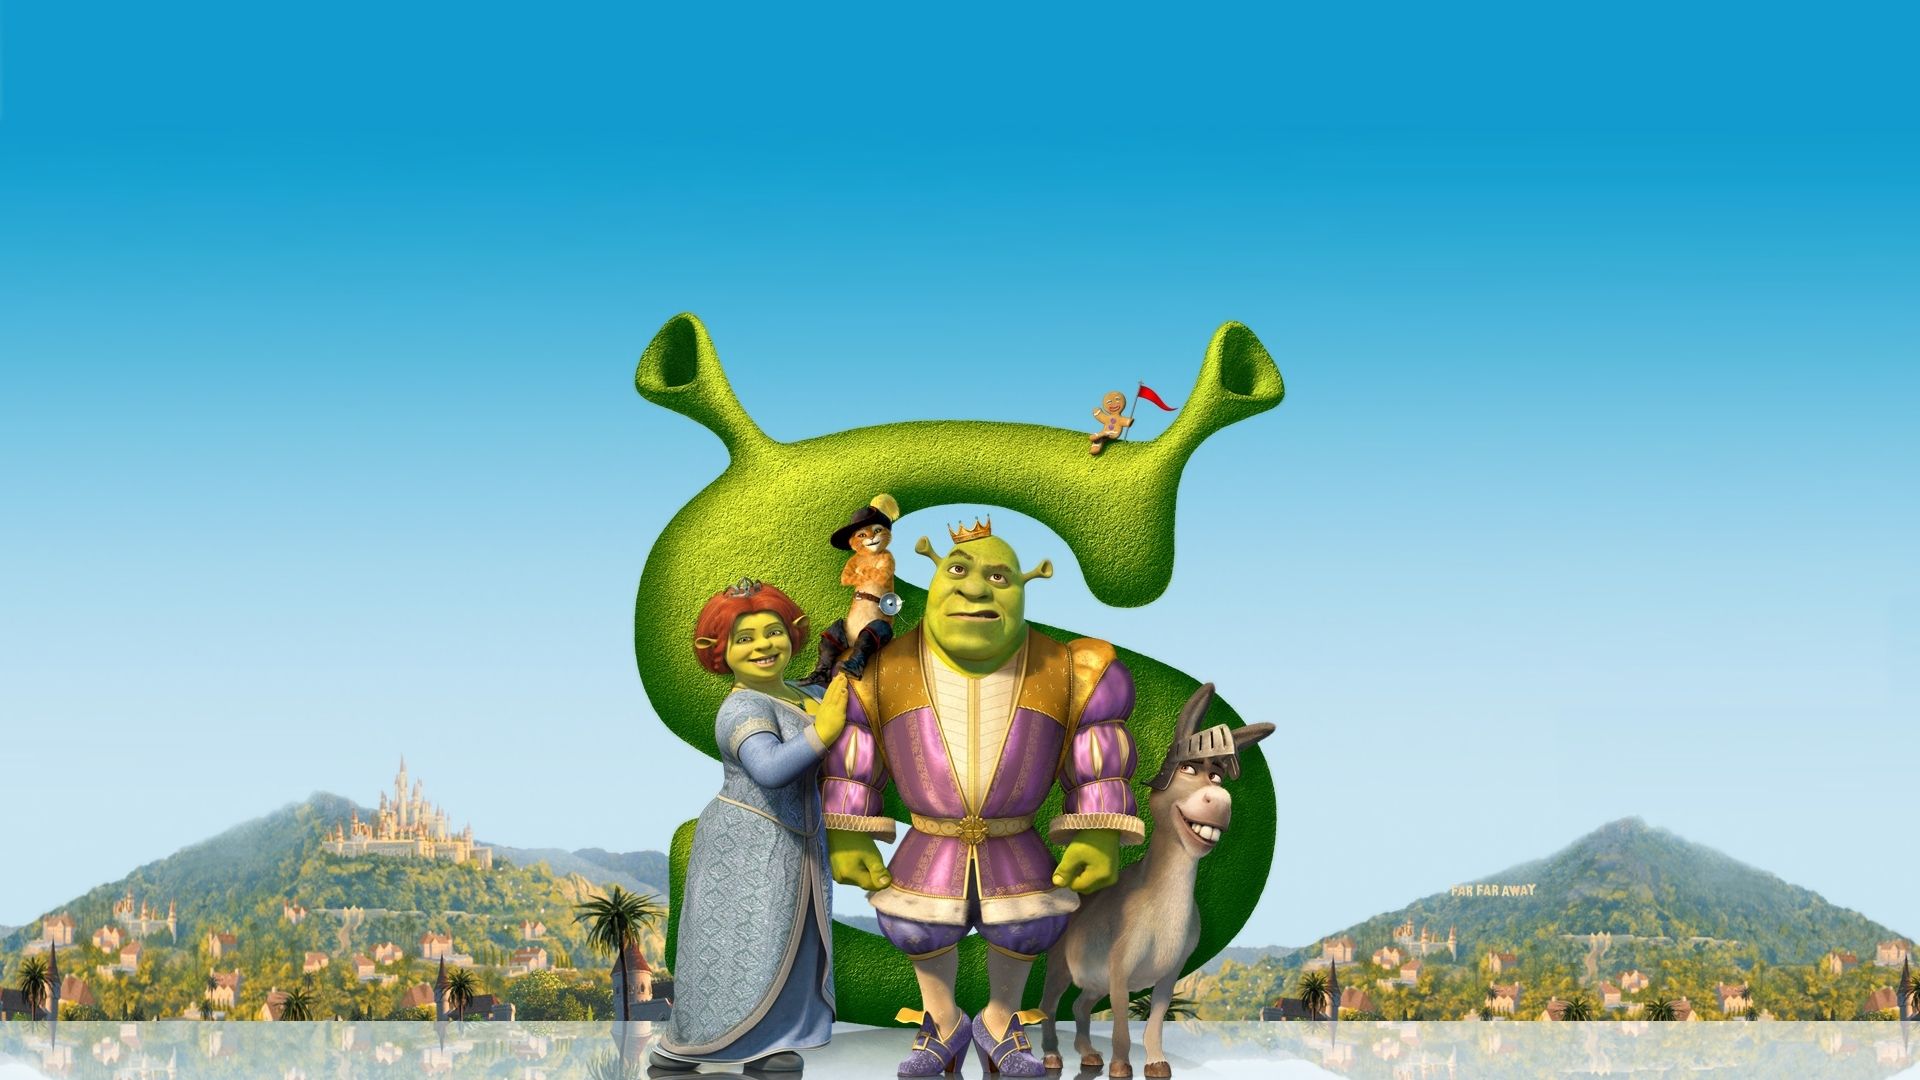 Shrek Wallpaper for Computer. Shrek 2